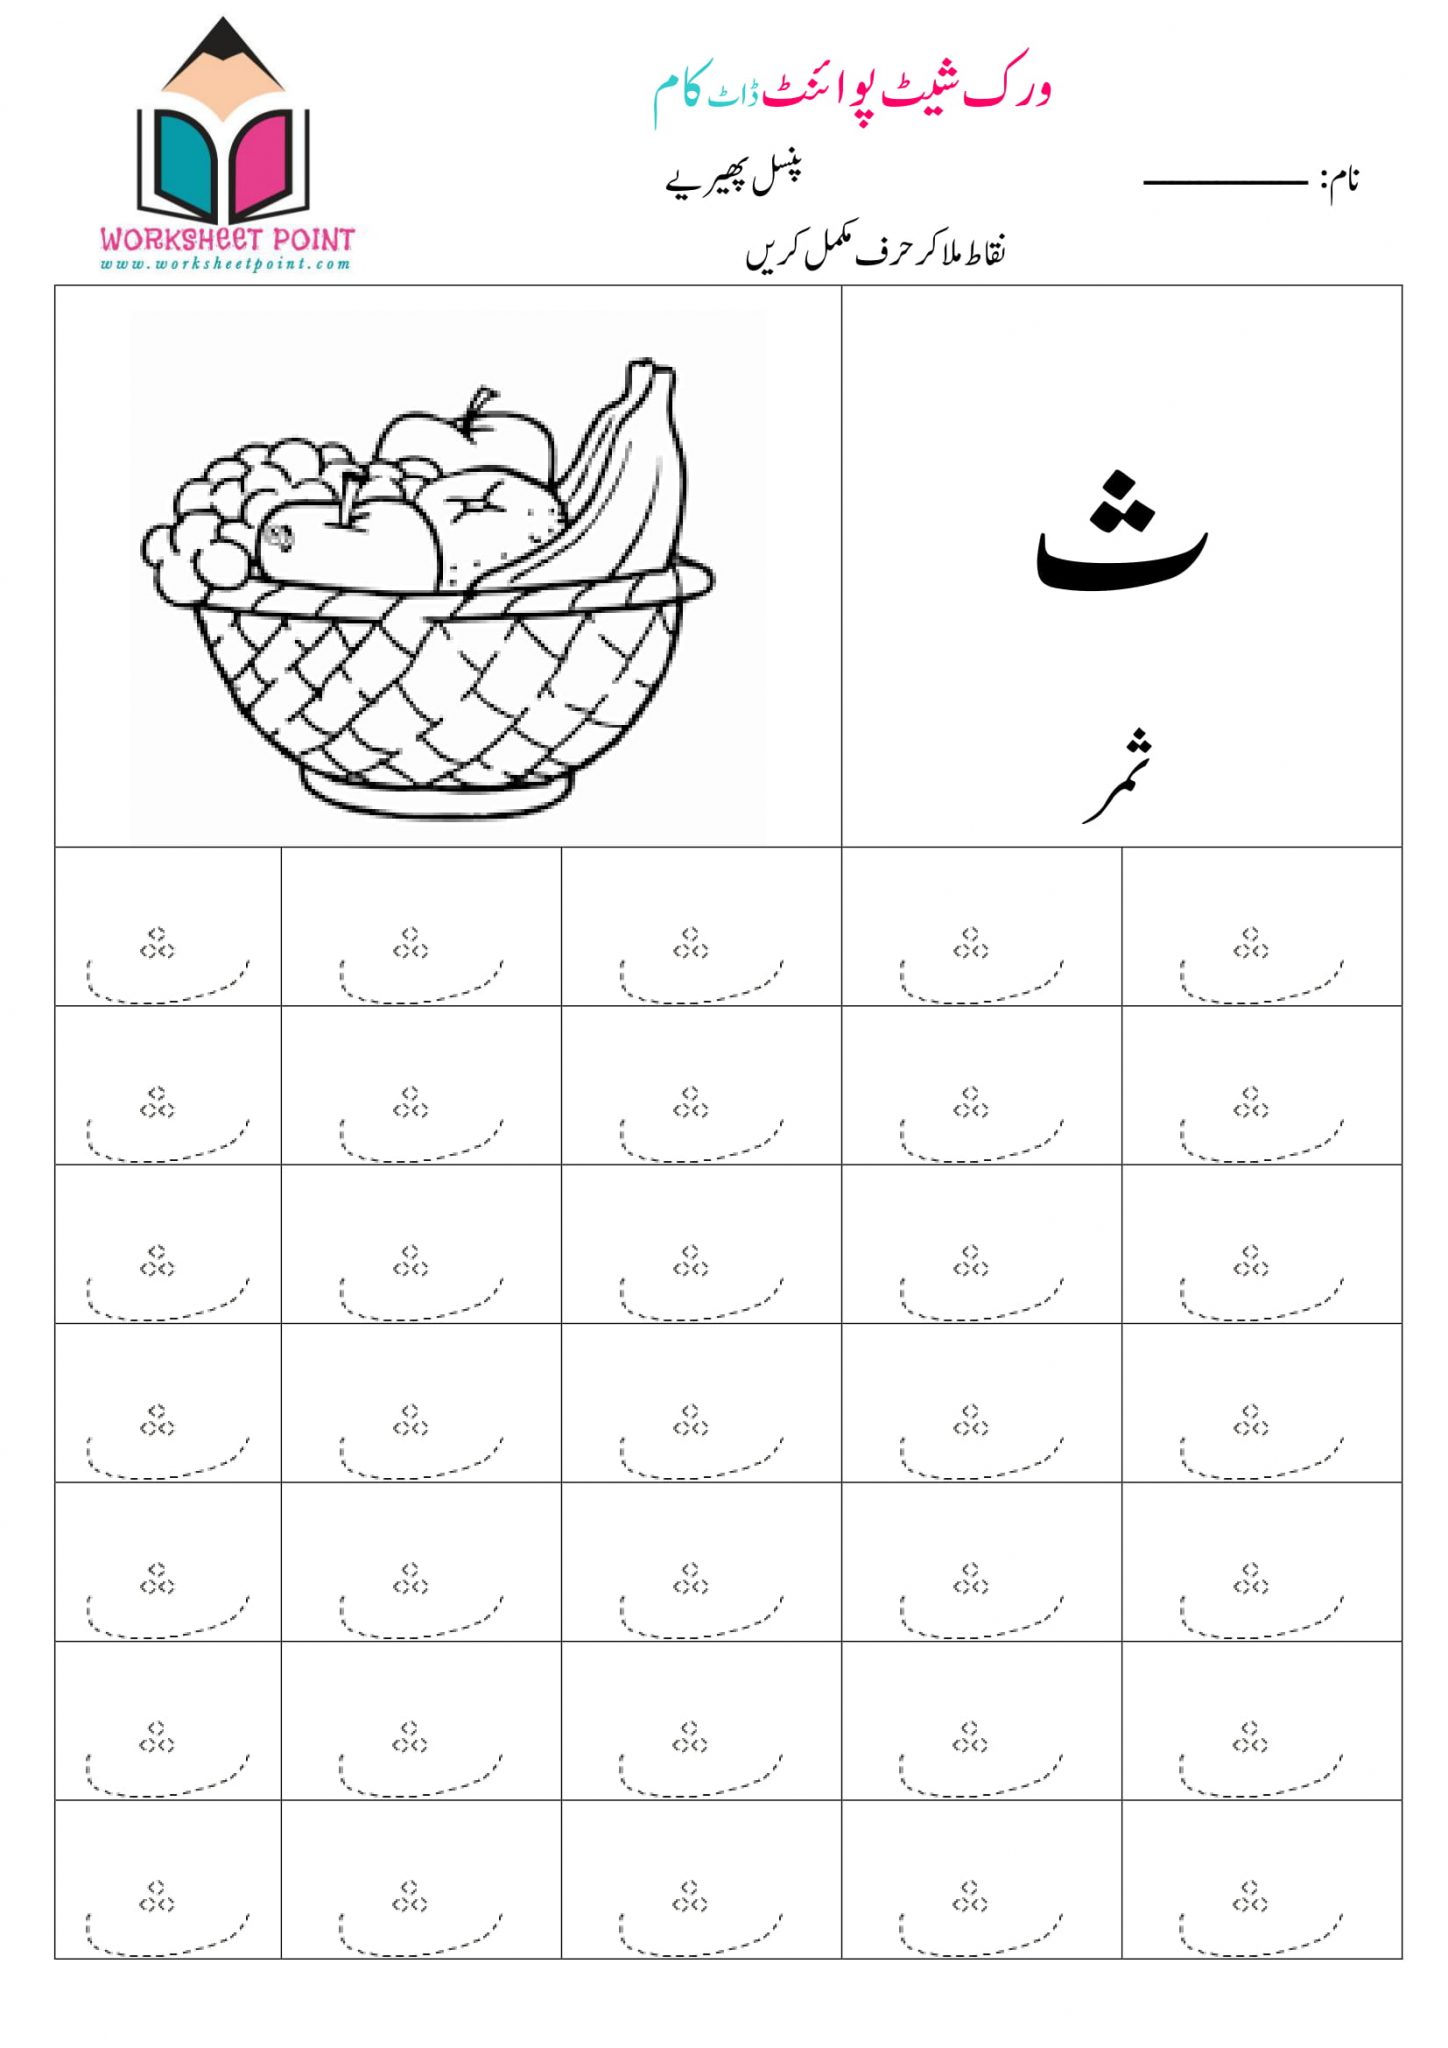 urdu-counting-language-worksheets-kindergarten-11-to-20-urdu-counting